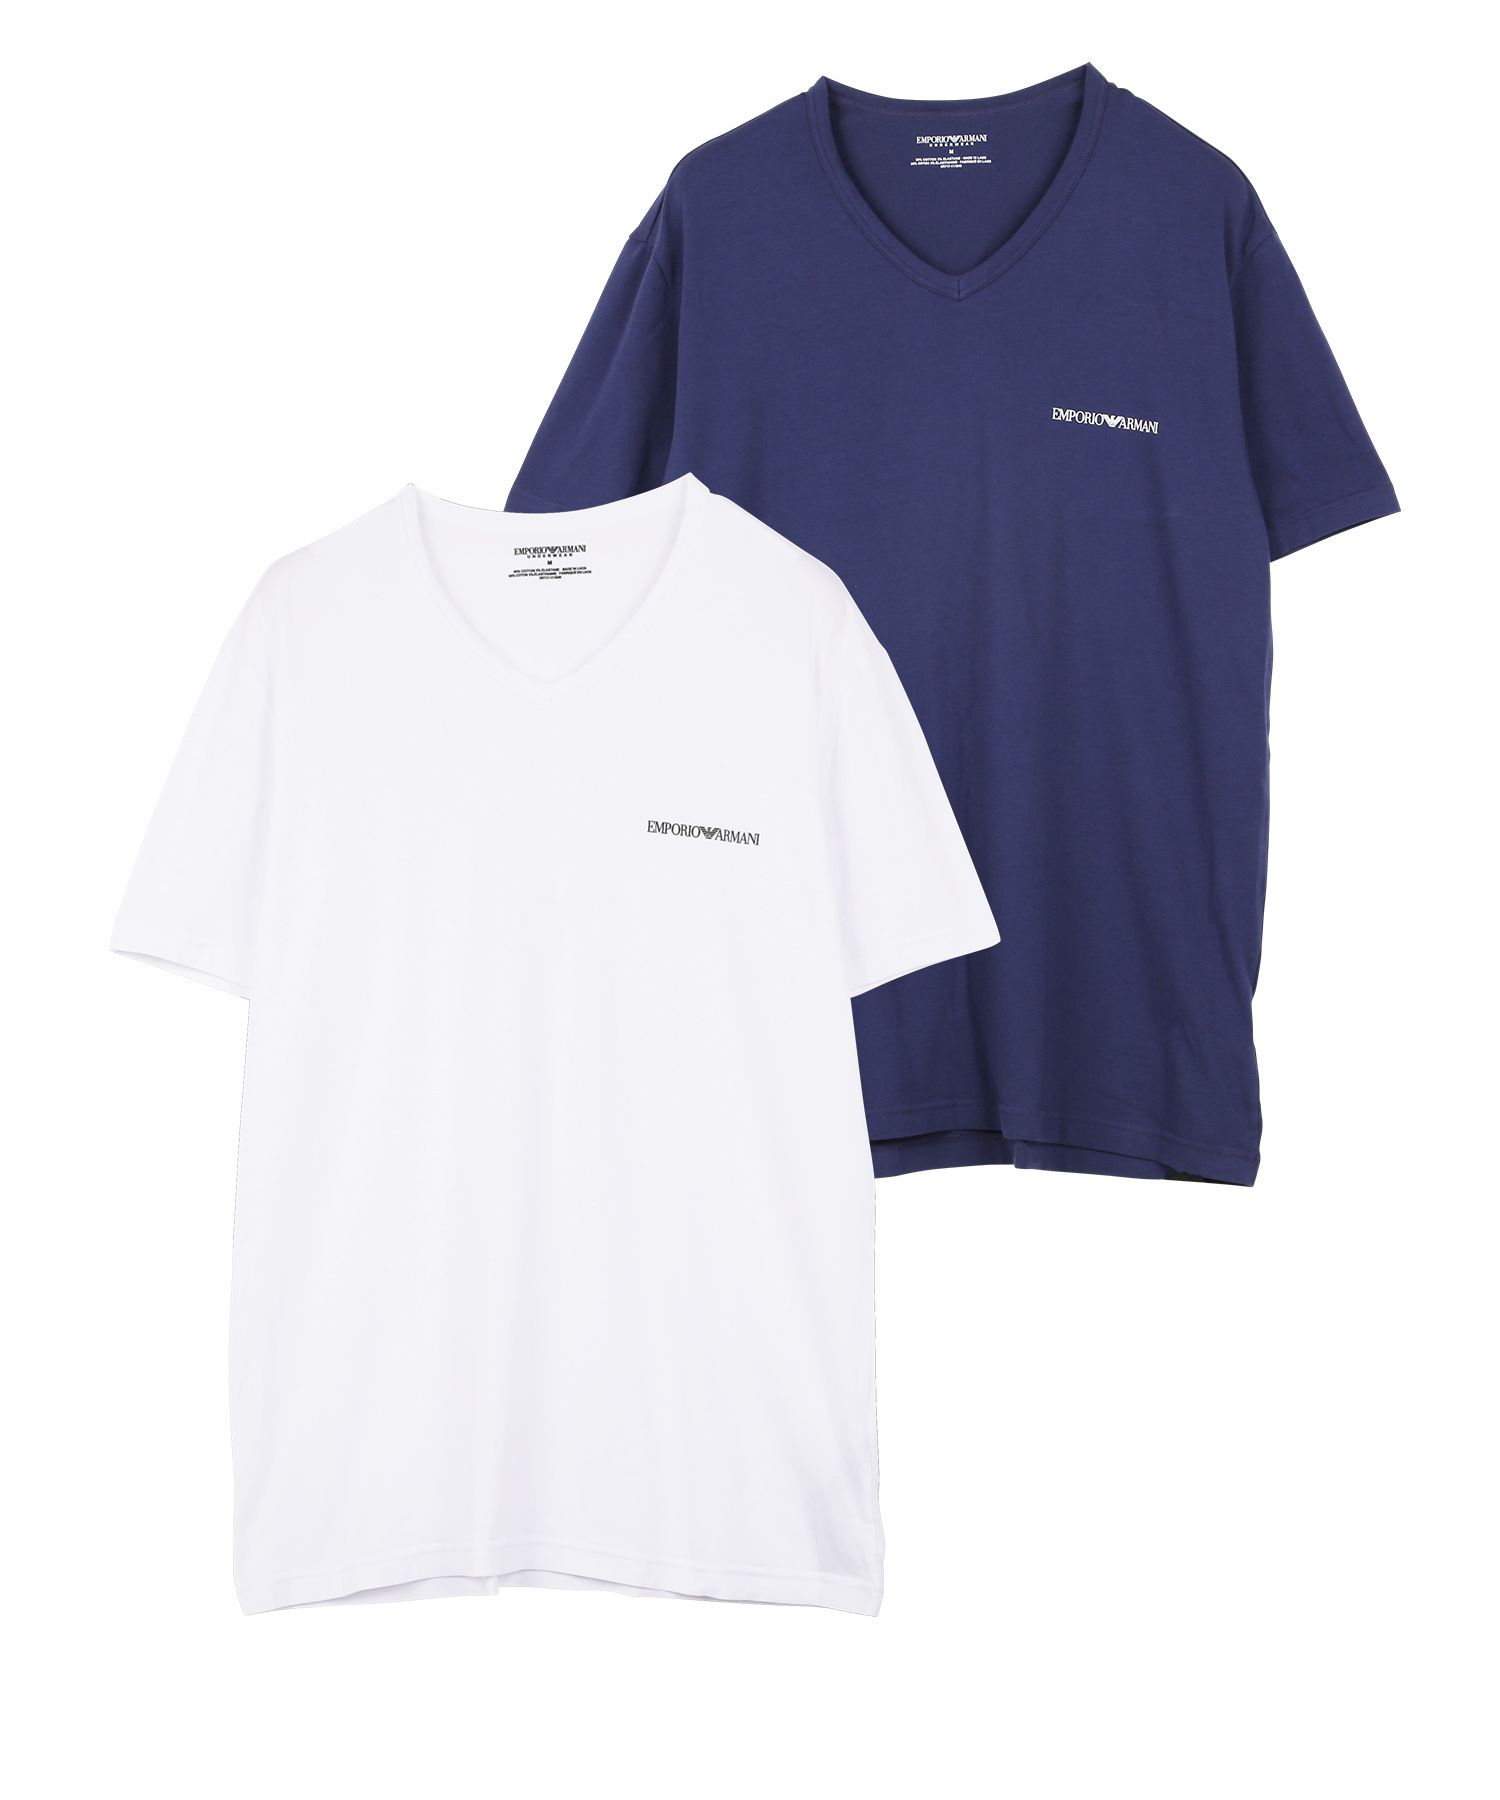 ワケあり エンポリオ アルマーニ EMPORIO ARMANI Tシャツ 2枚セット メンズ 半袖 綿混 コットン アウトレット ロゴ 高級  ハイブランド メール便